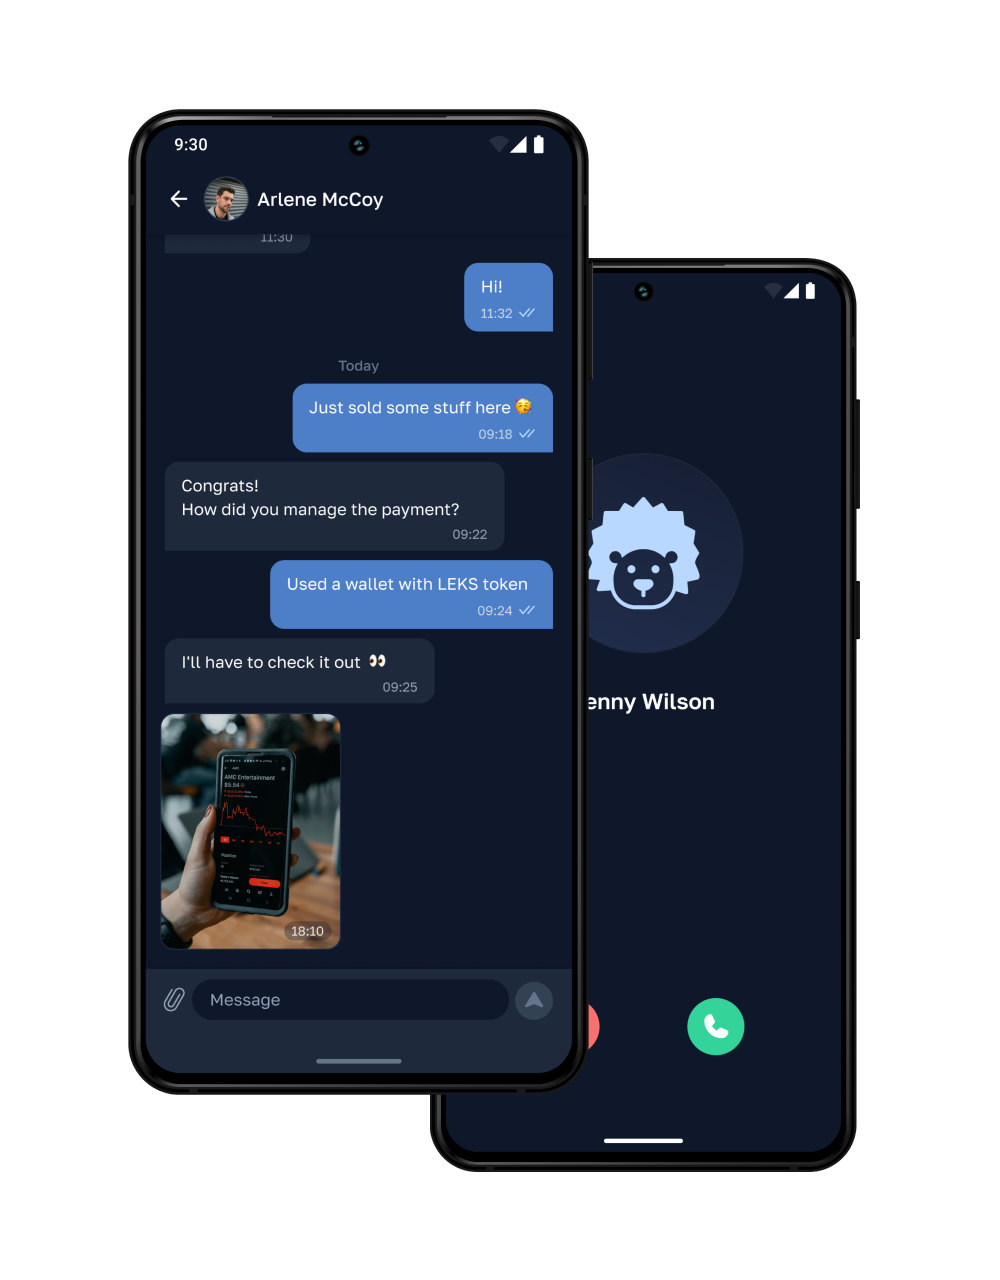 chat call screenshot (dark mode)